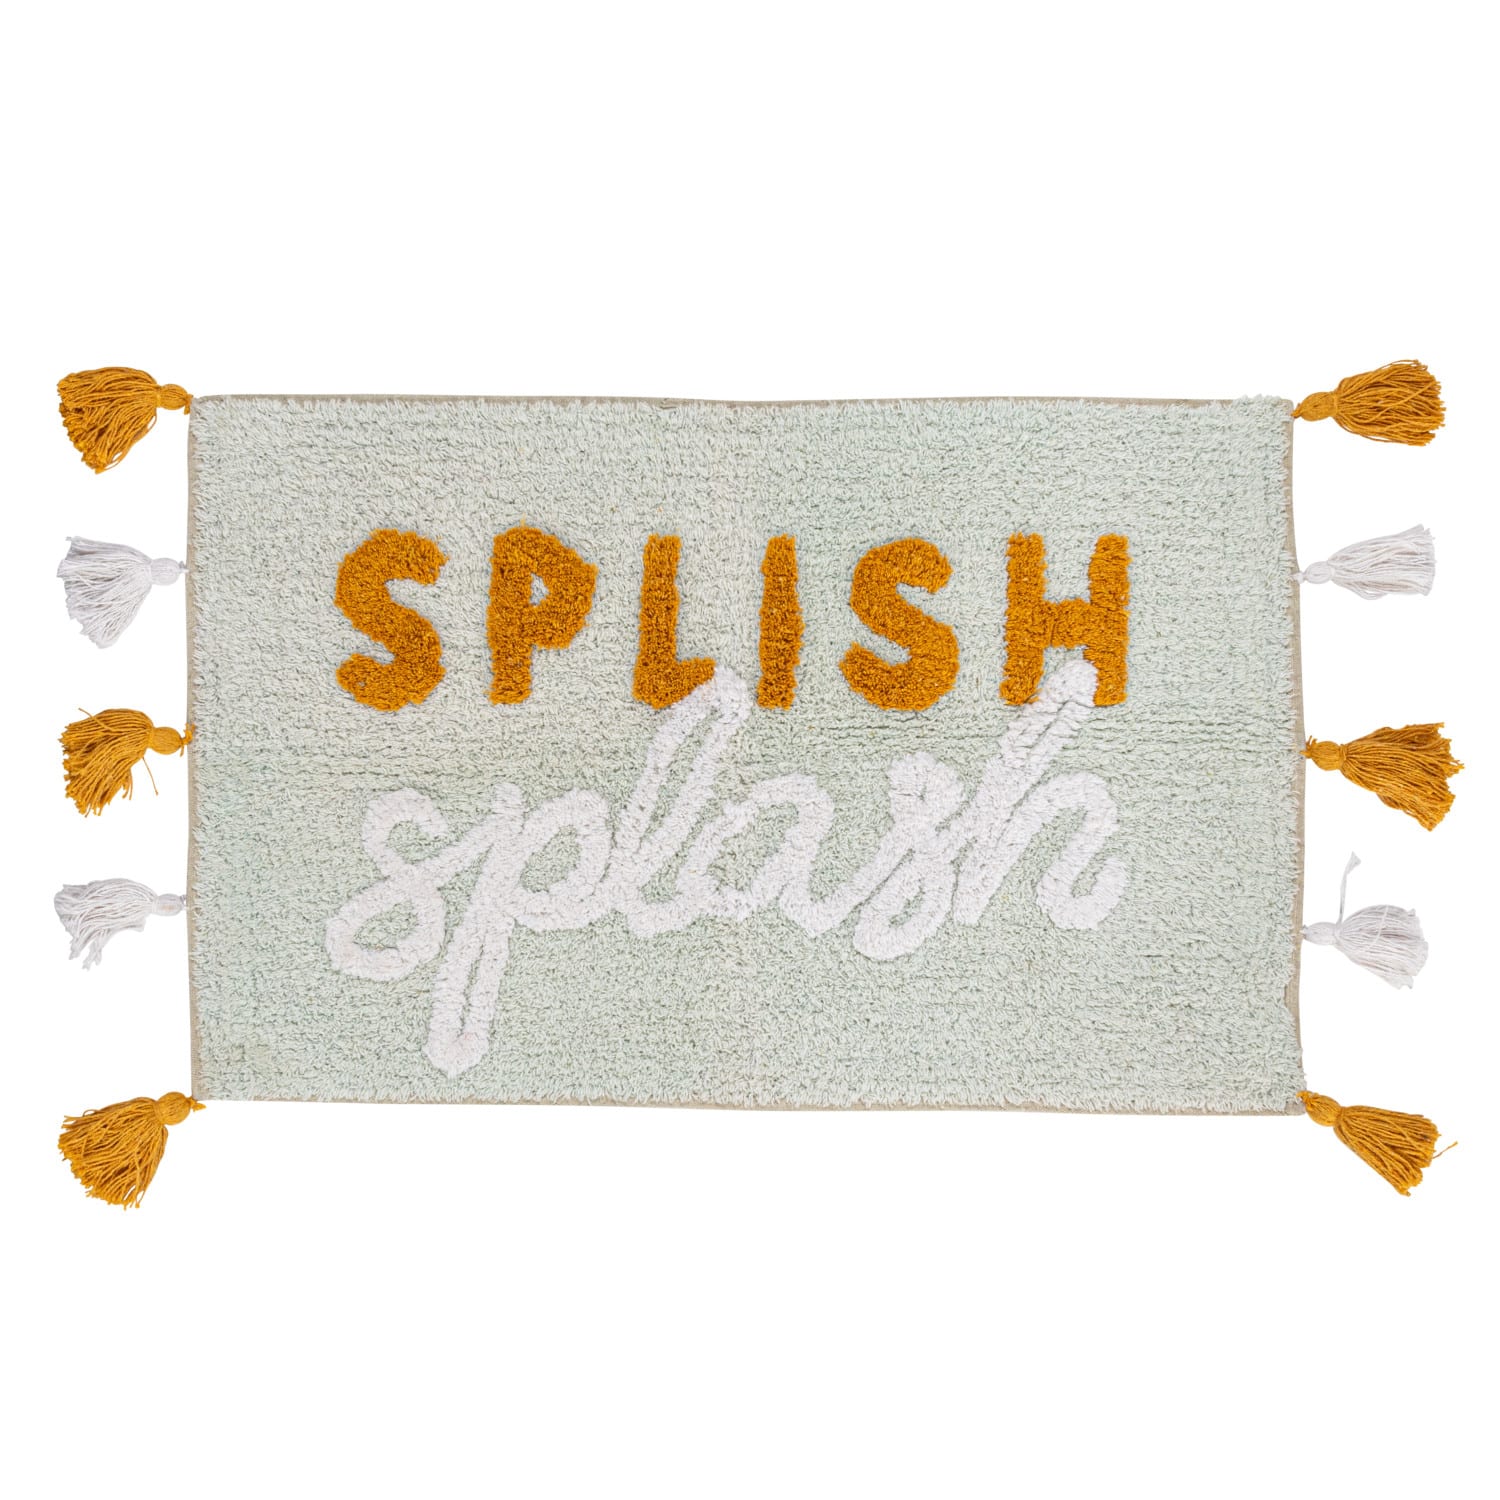 Splish Splash Embroidered Cotton Blend Bath Mat with Tassels